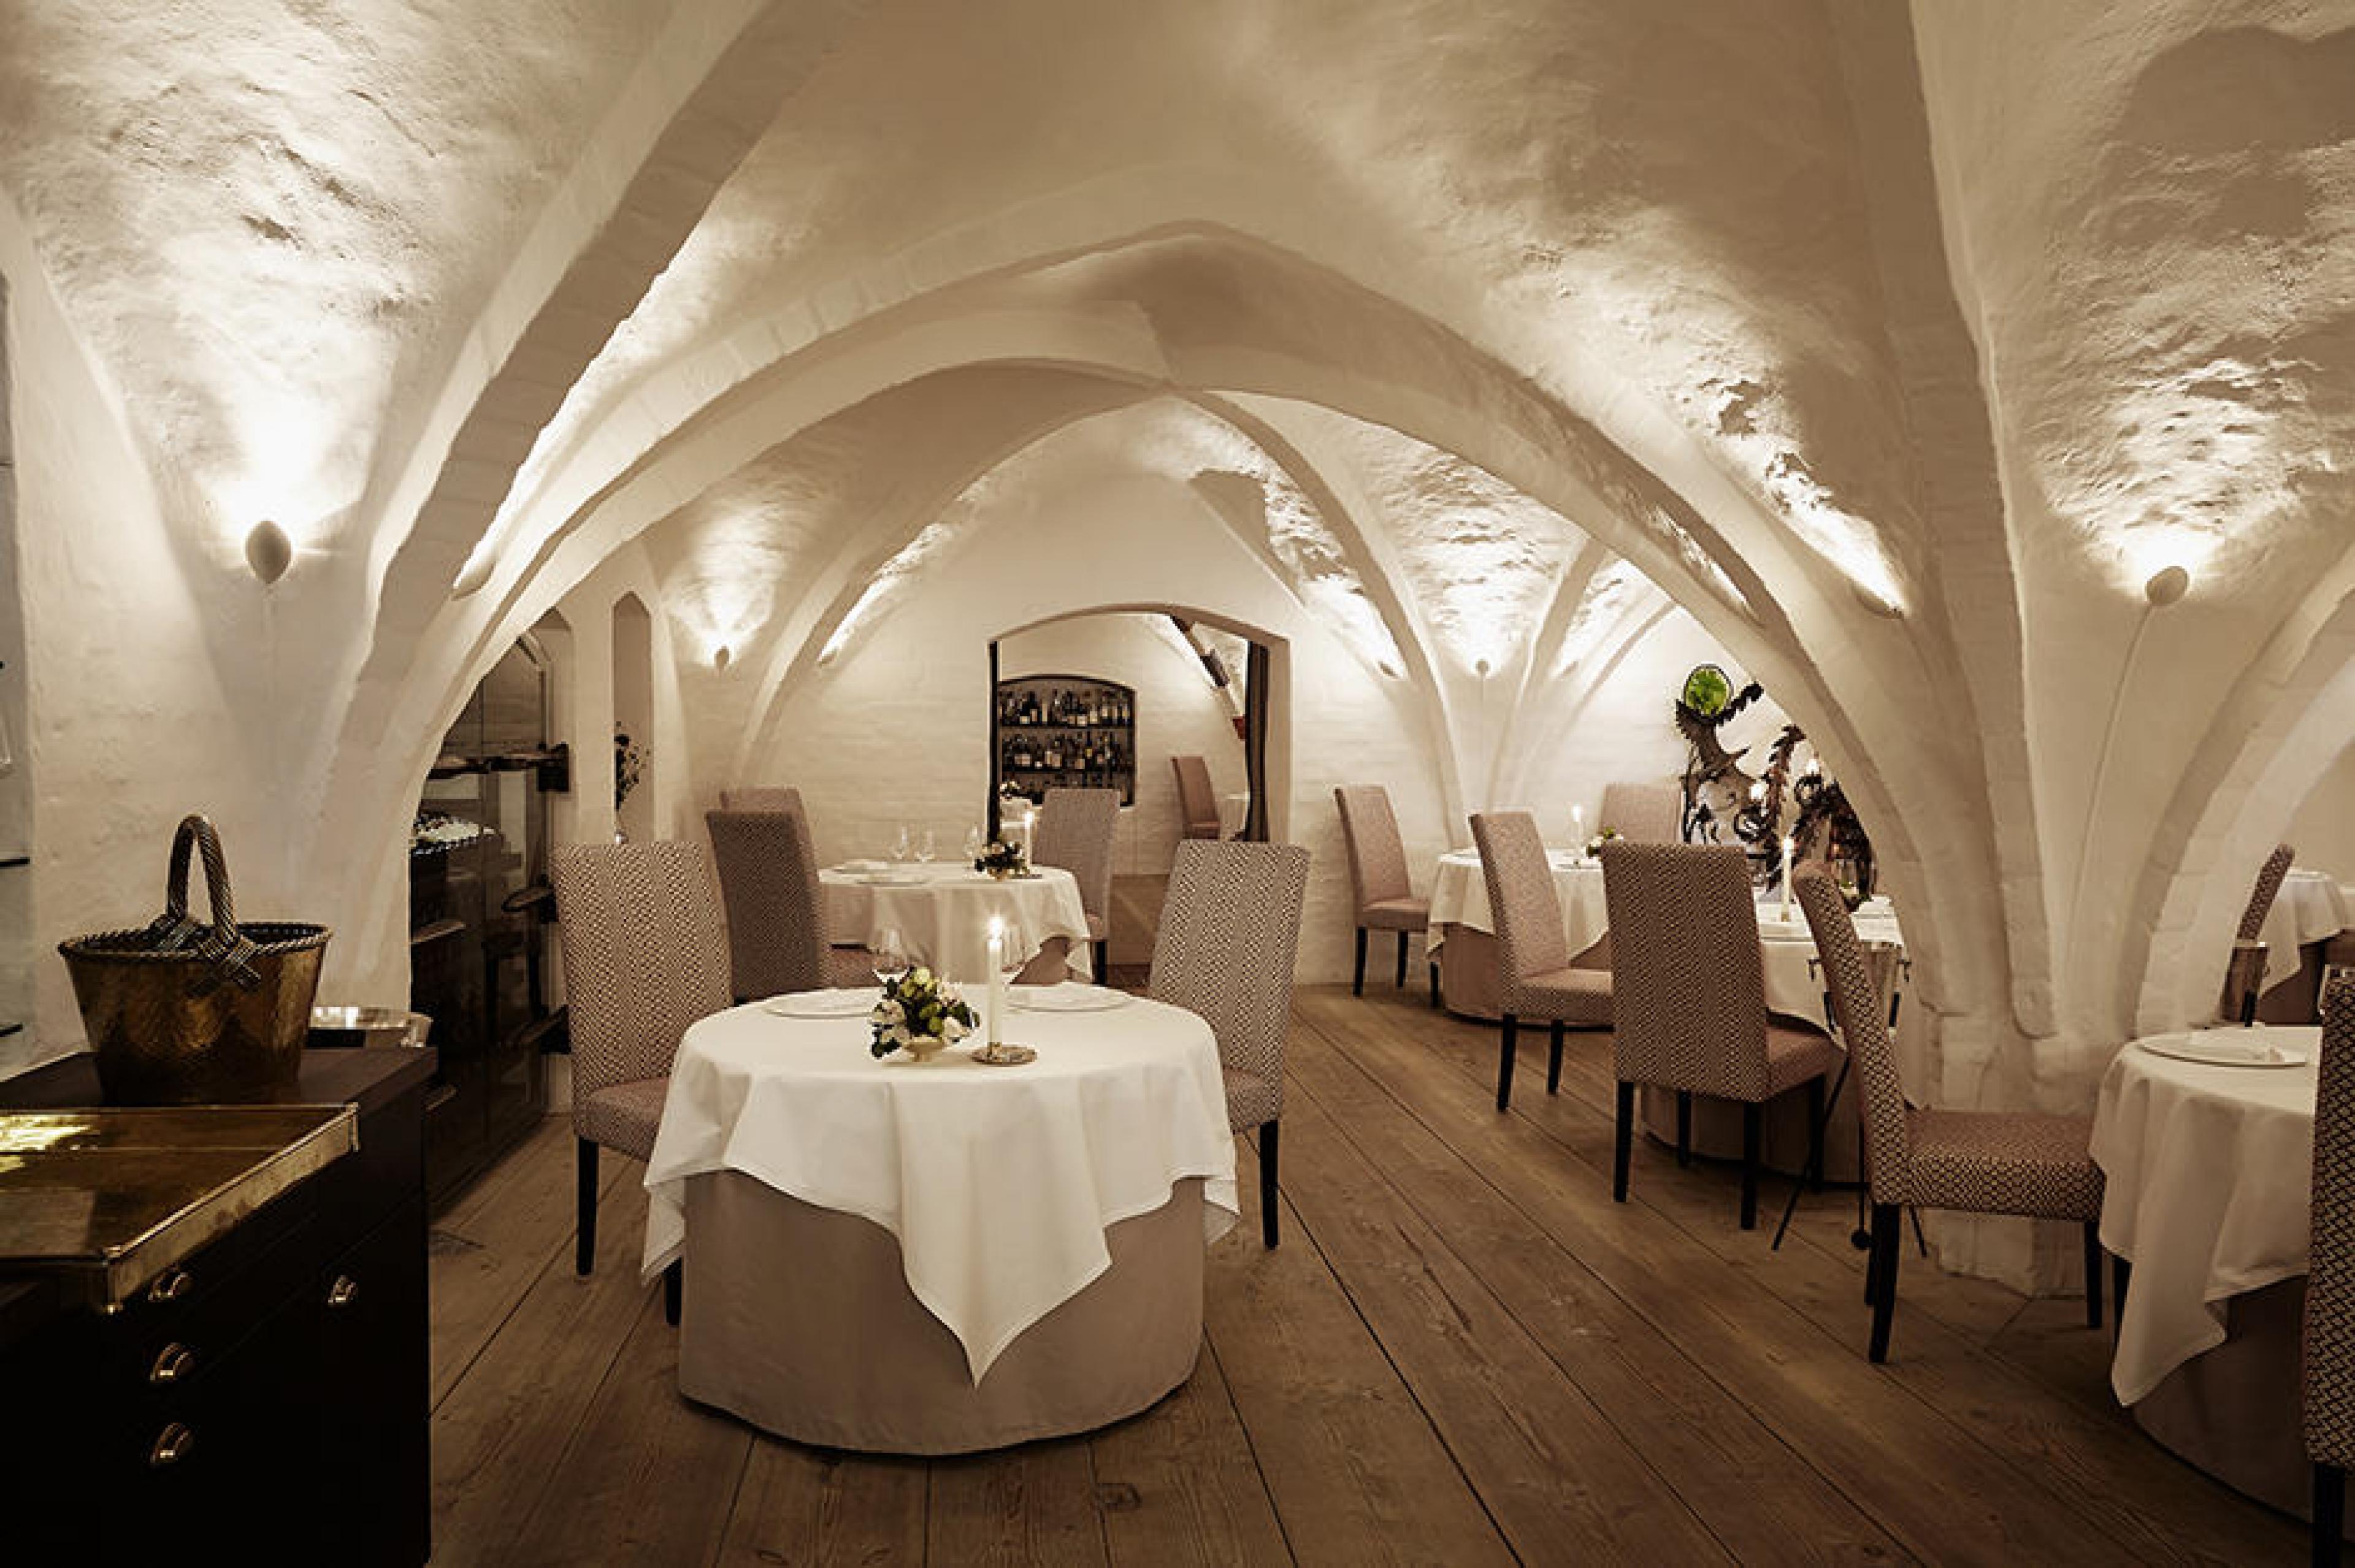 Dinning Area at Kong Hans, Copenhagen, Denmark